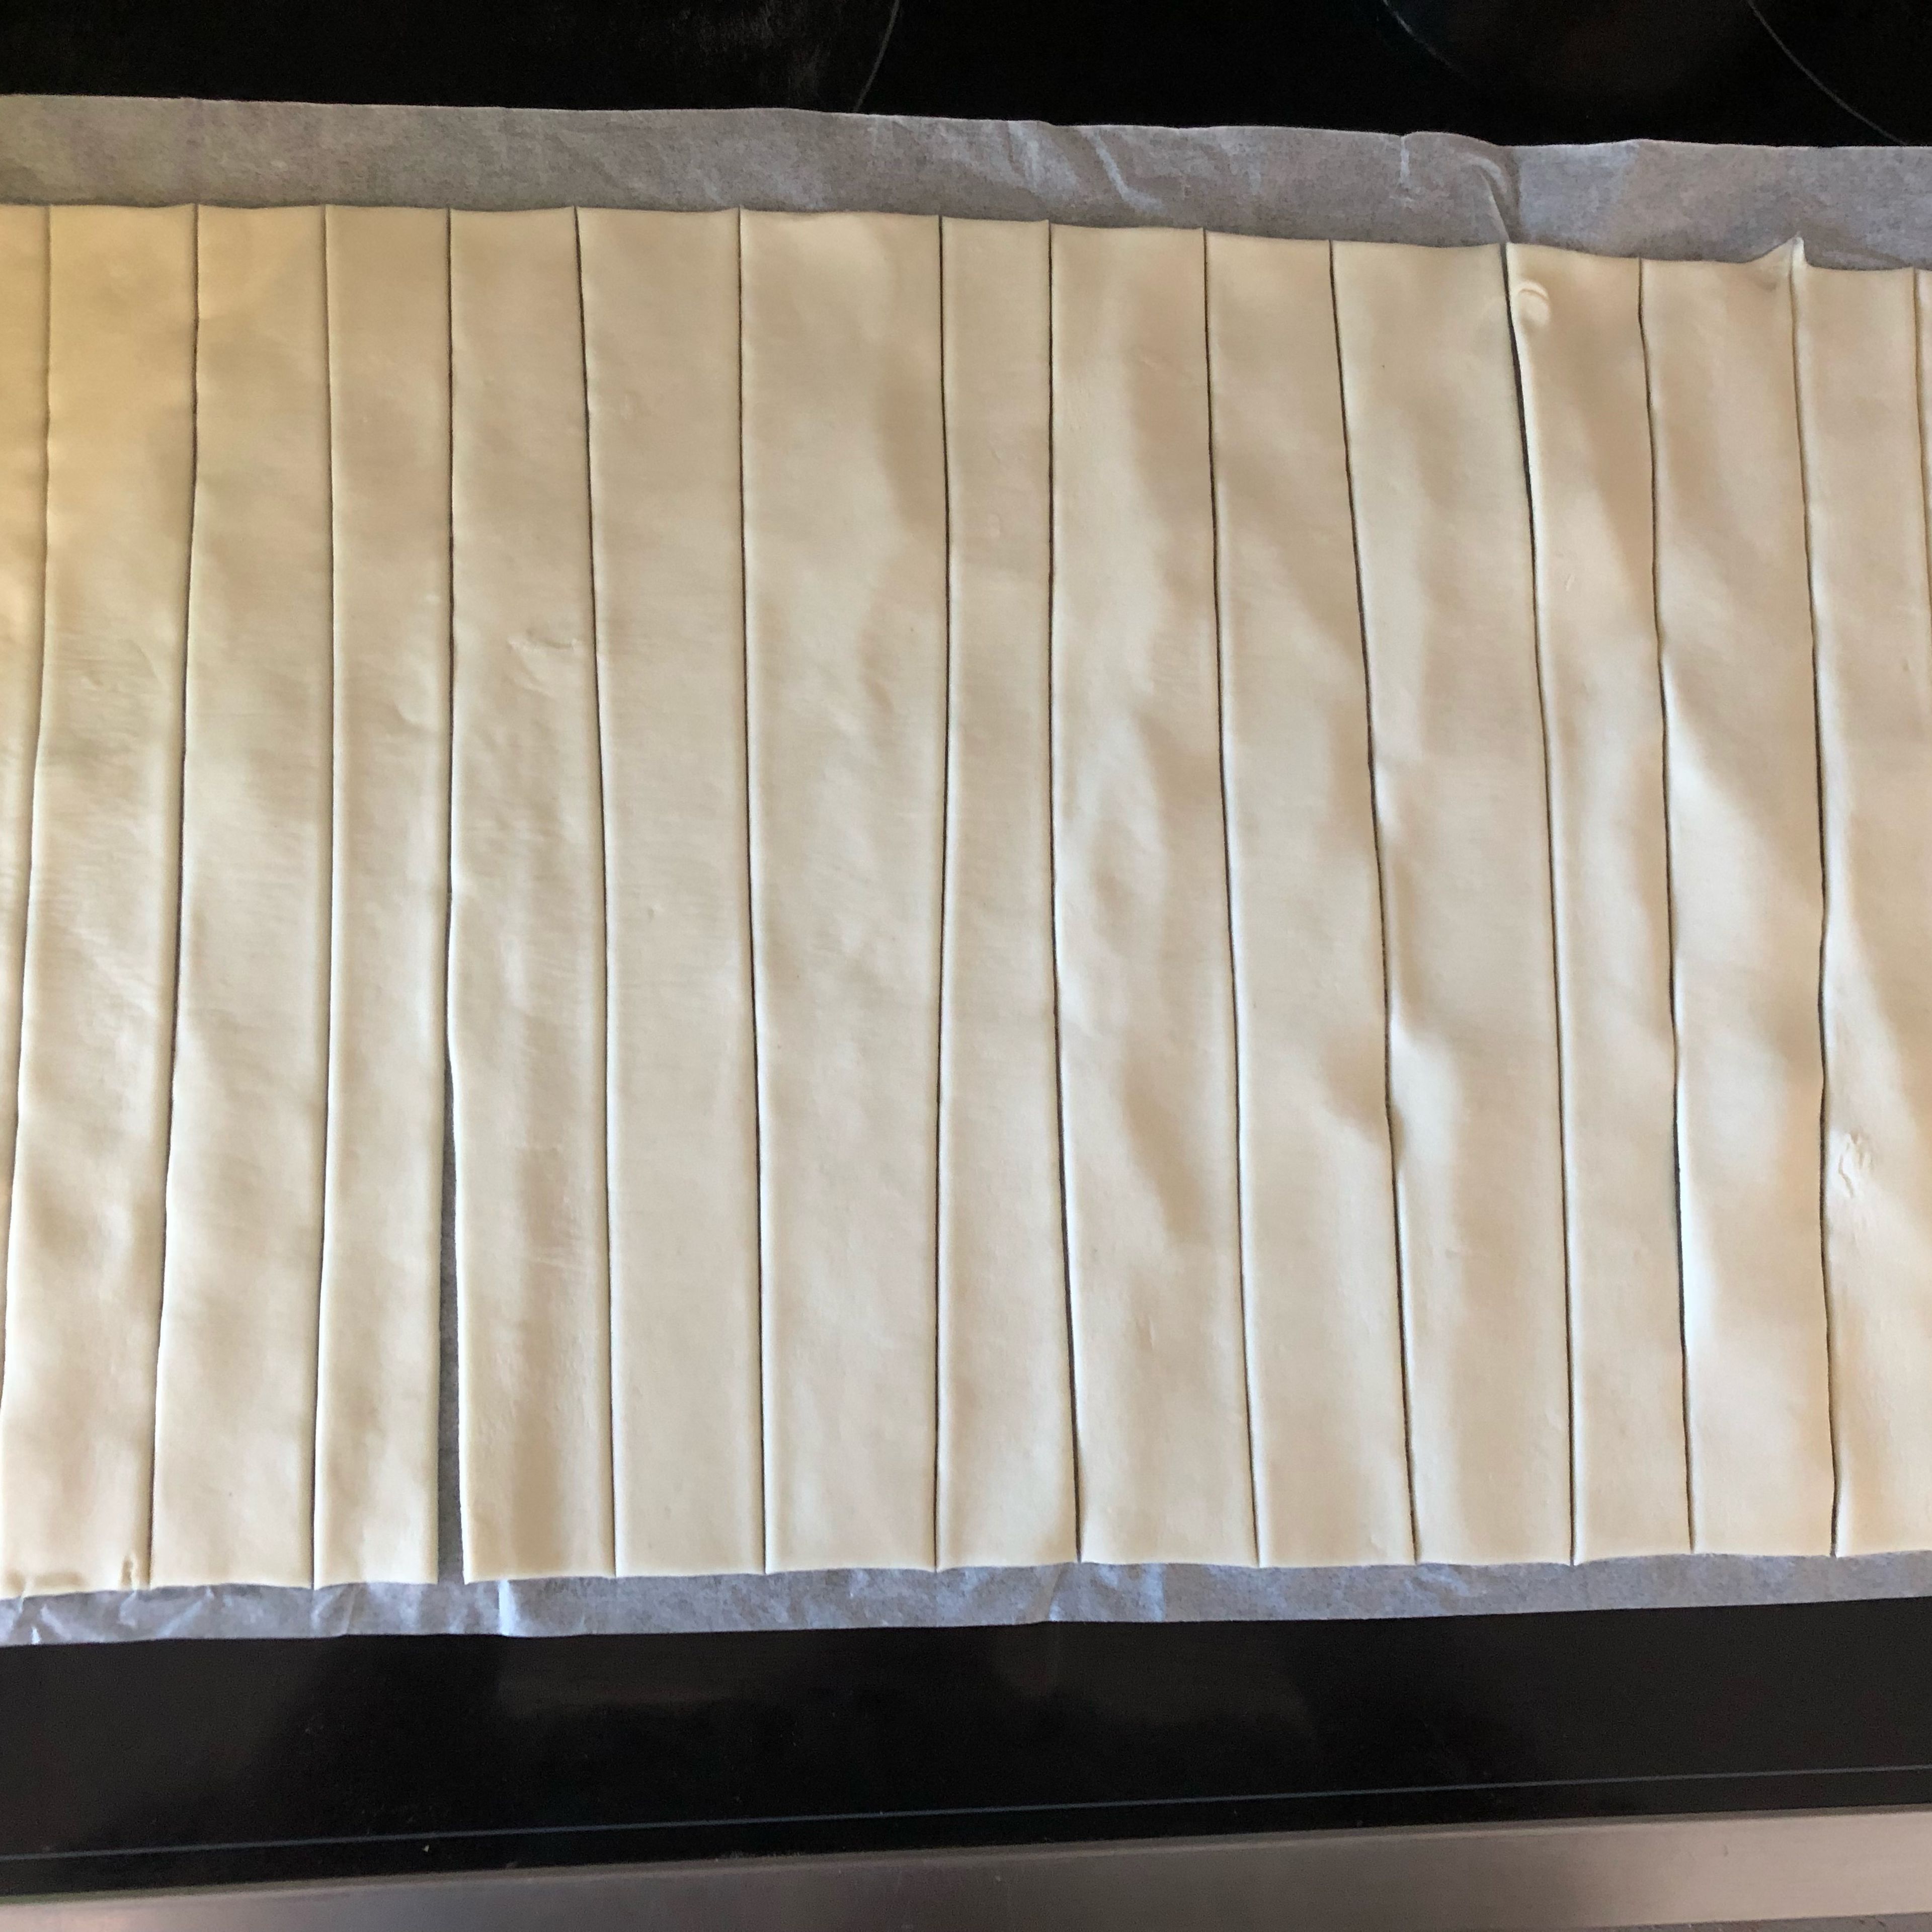 Ofen auf 180 Grad OHUH vorheizen. Blätterteig in 16 gleich breite Streifen schneiden (ca. 1,5 cm). Am leichtesten geht dies mit einem Pizzaschneider.